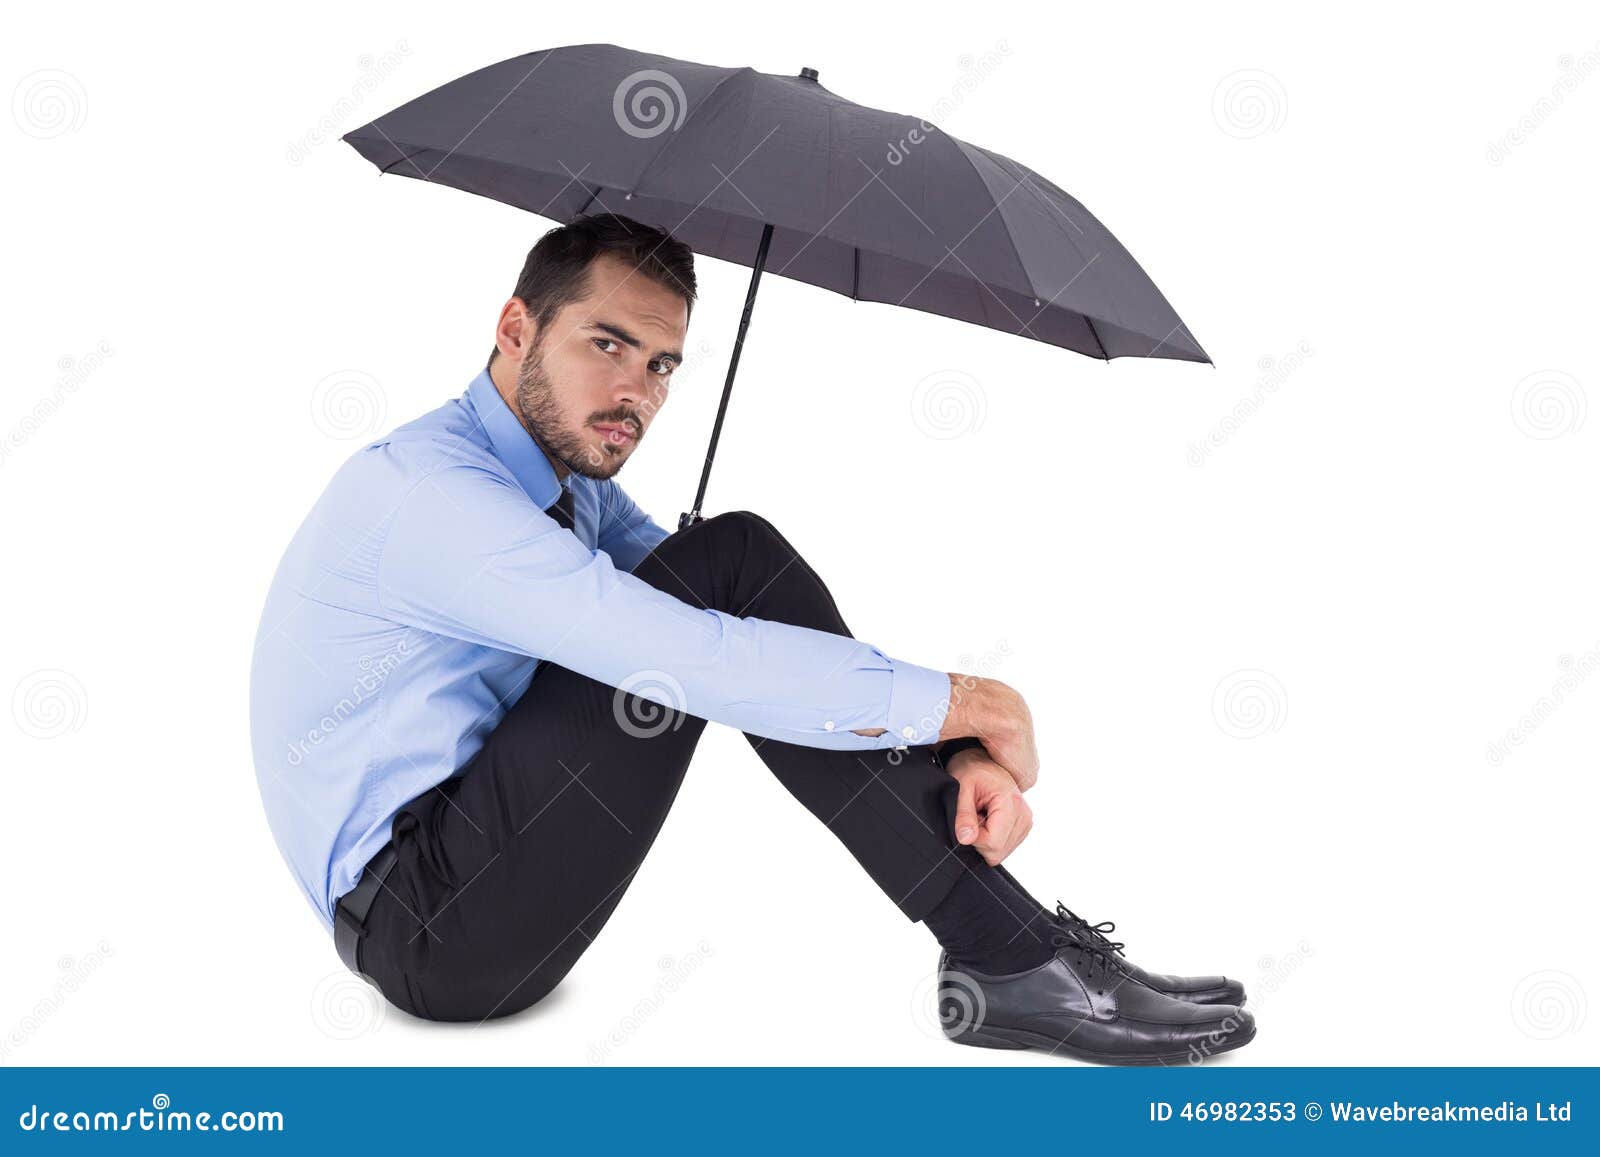 Зонтик сидит. Человек с зонтиком сидит. Человек сидит с зонтом. Парень с зонтиком сидит. Человек сидит под зонтиком.